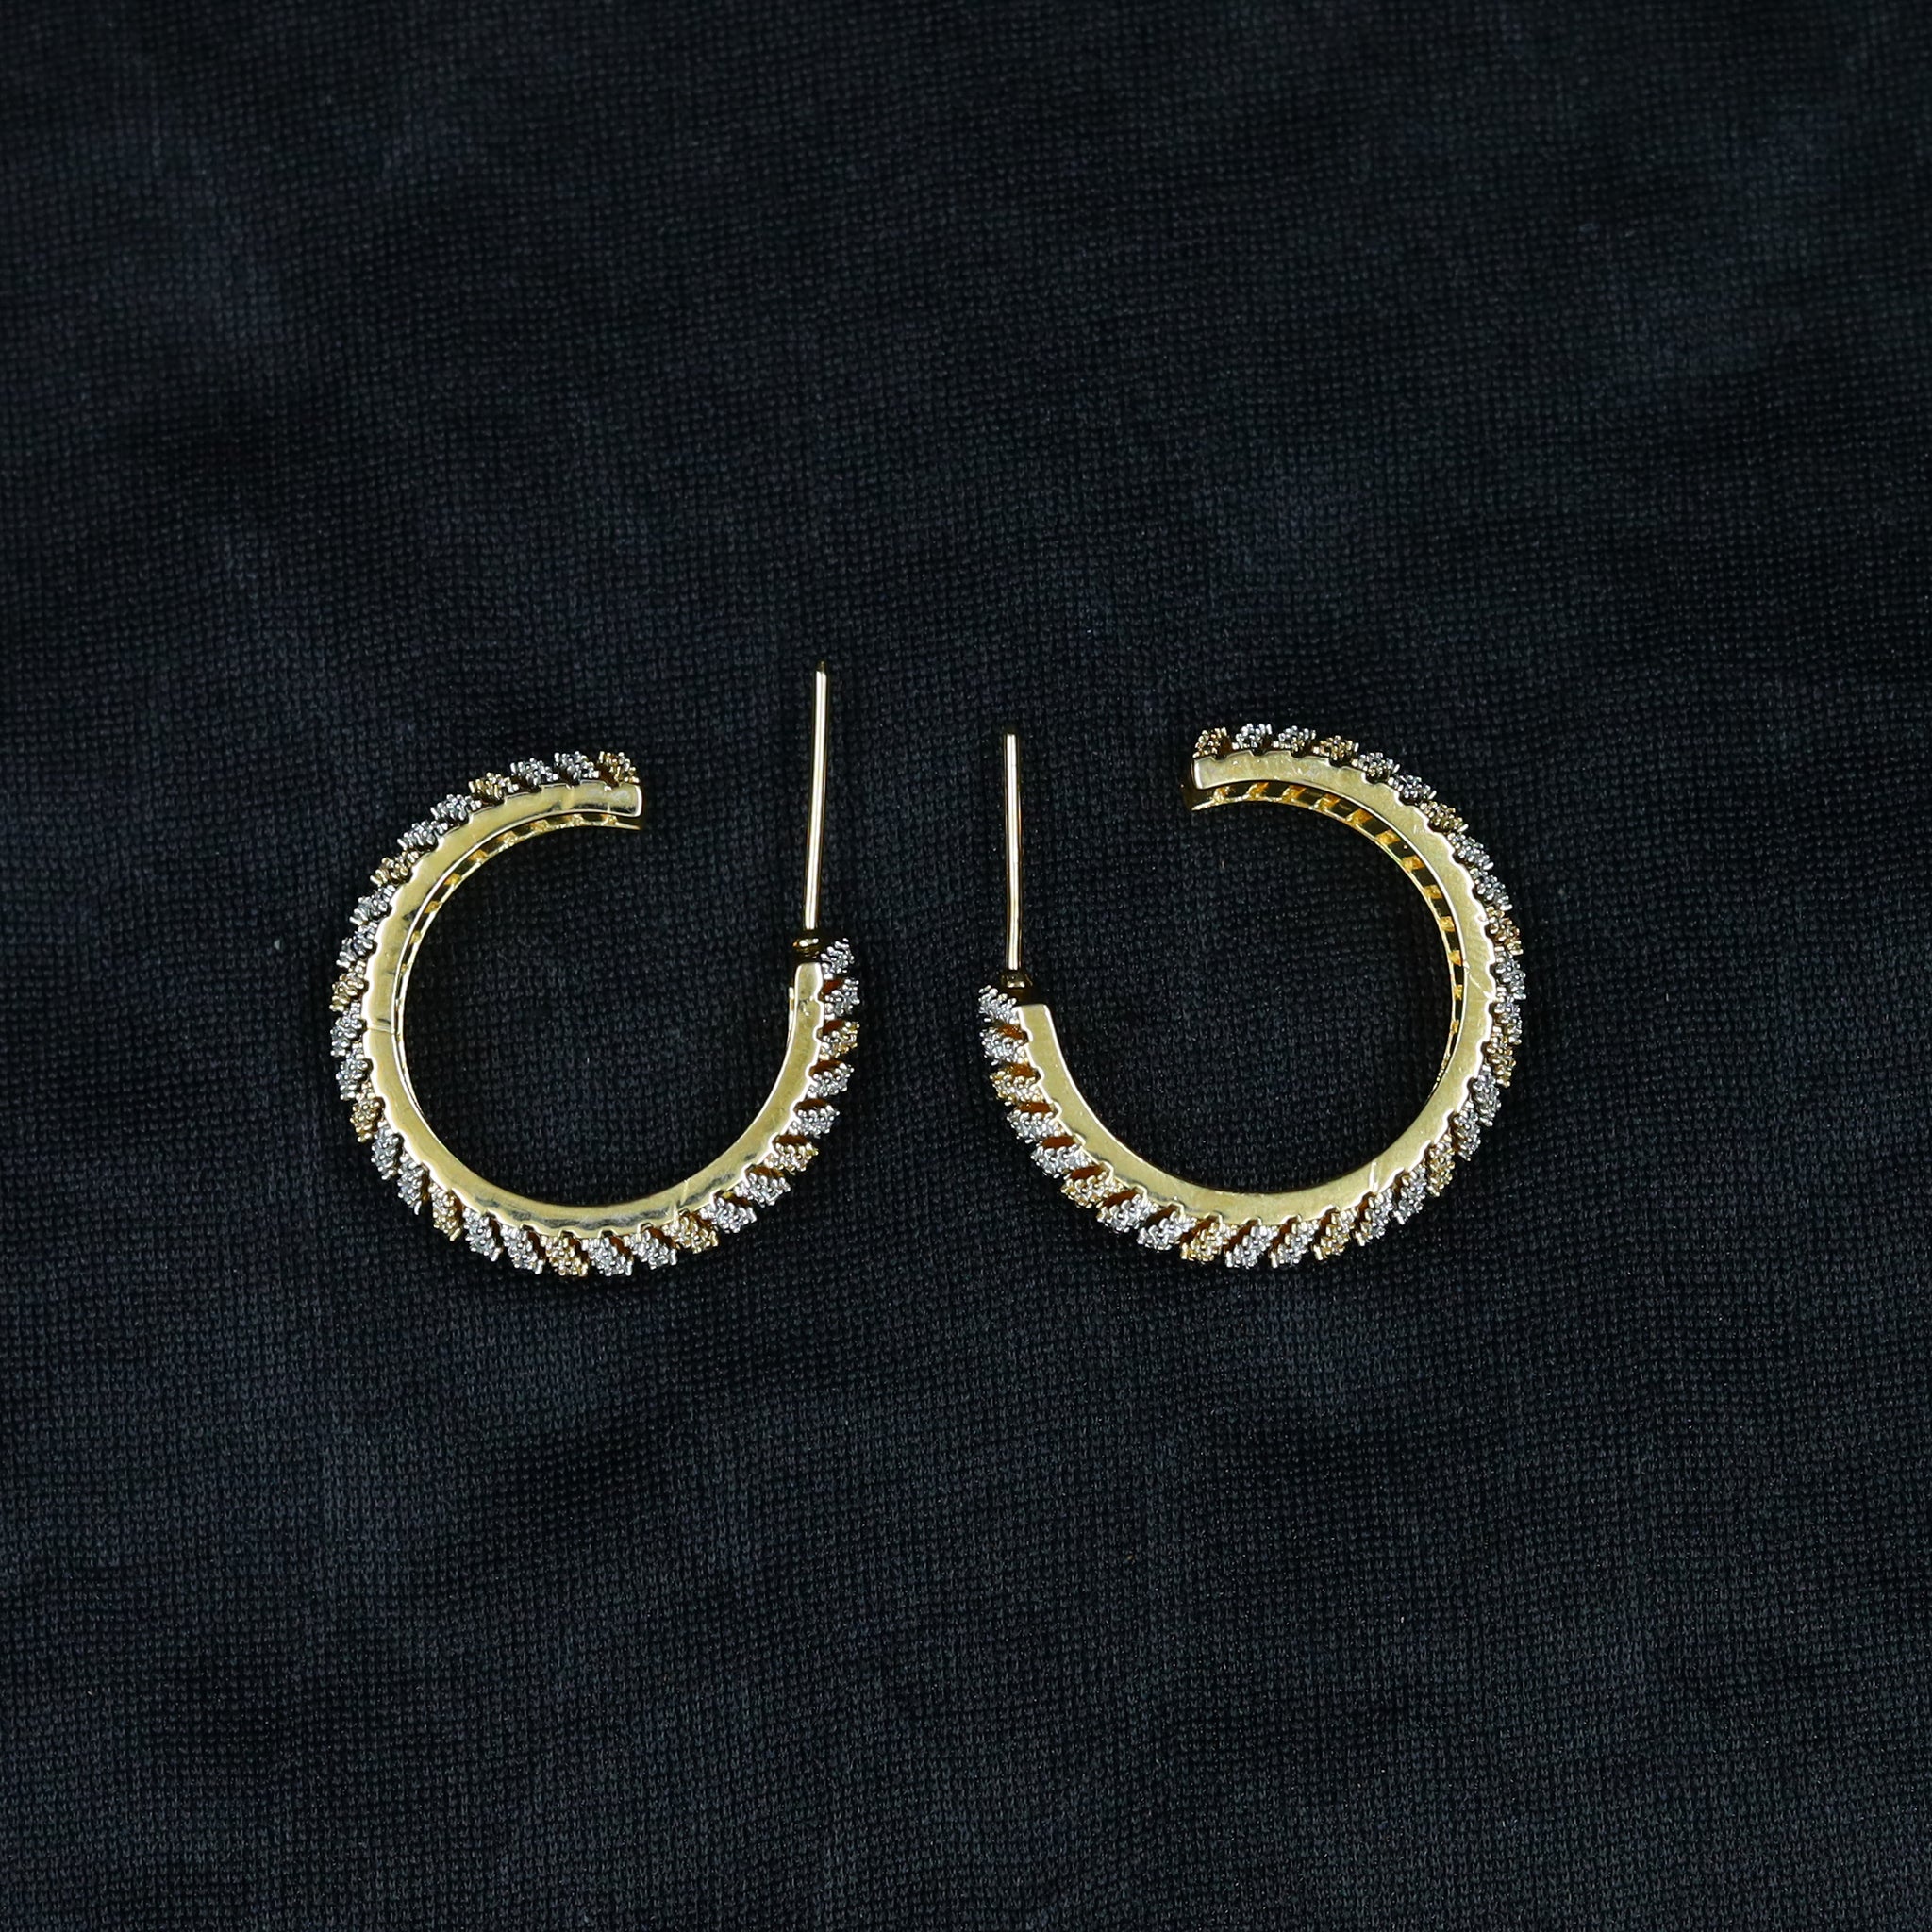 Bali Zircon/AD Earring 11958-69